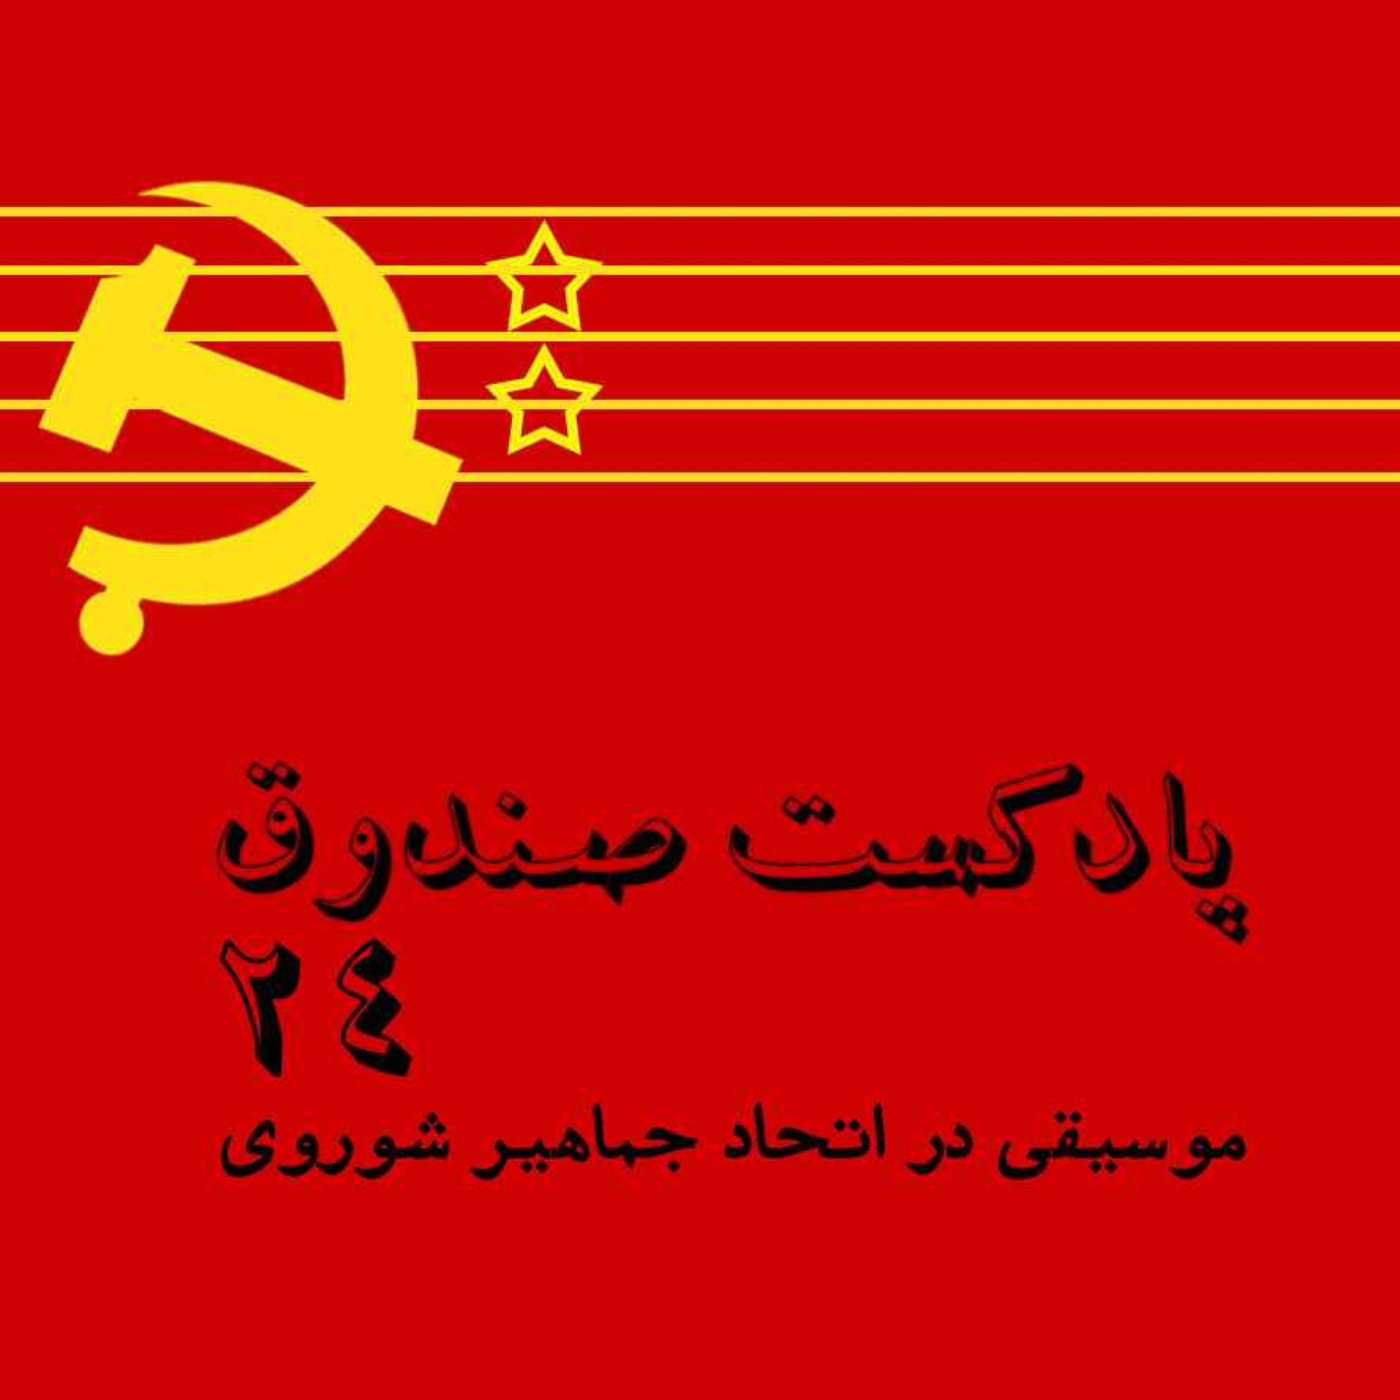 پادکست صندوق - قسمت 24: موسیقی در اتحاد جماهیر شوروی